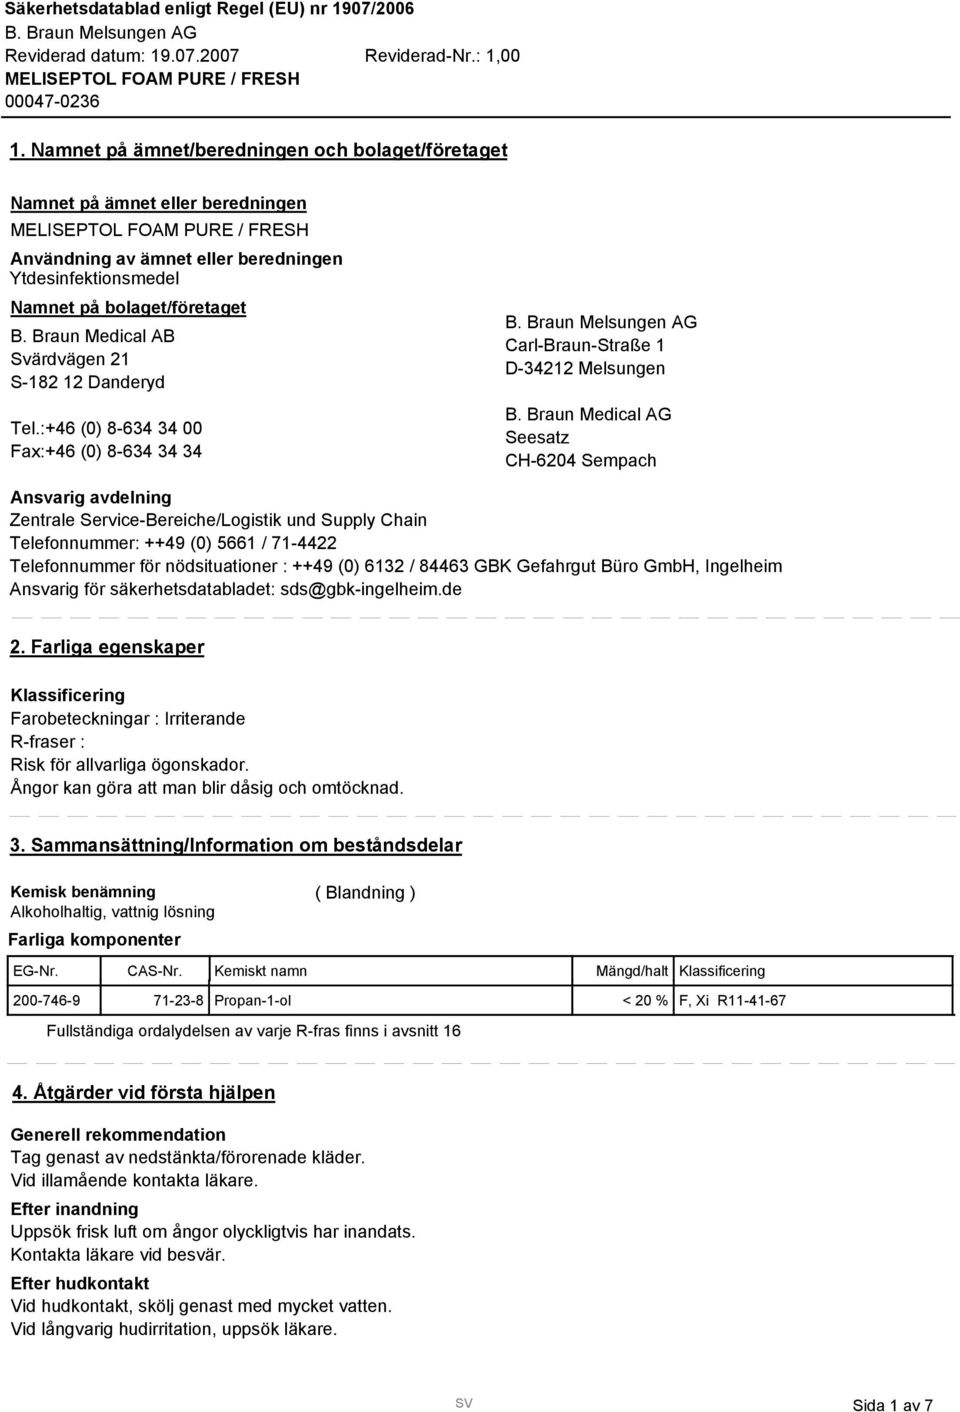 Braun Medical AG Seesatz CH-6204 Sempach Ansvarig avdelning Zentrale Service-Bereiche/Logistik und Supply Chain Telefonnummer: ++49 (0) 5661 / 71-4422 Telefonnummer för nödsituationer : ++49 (0) 612